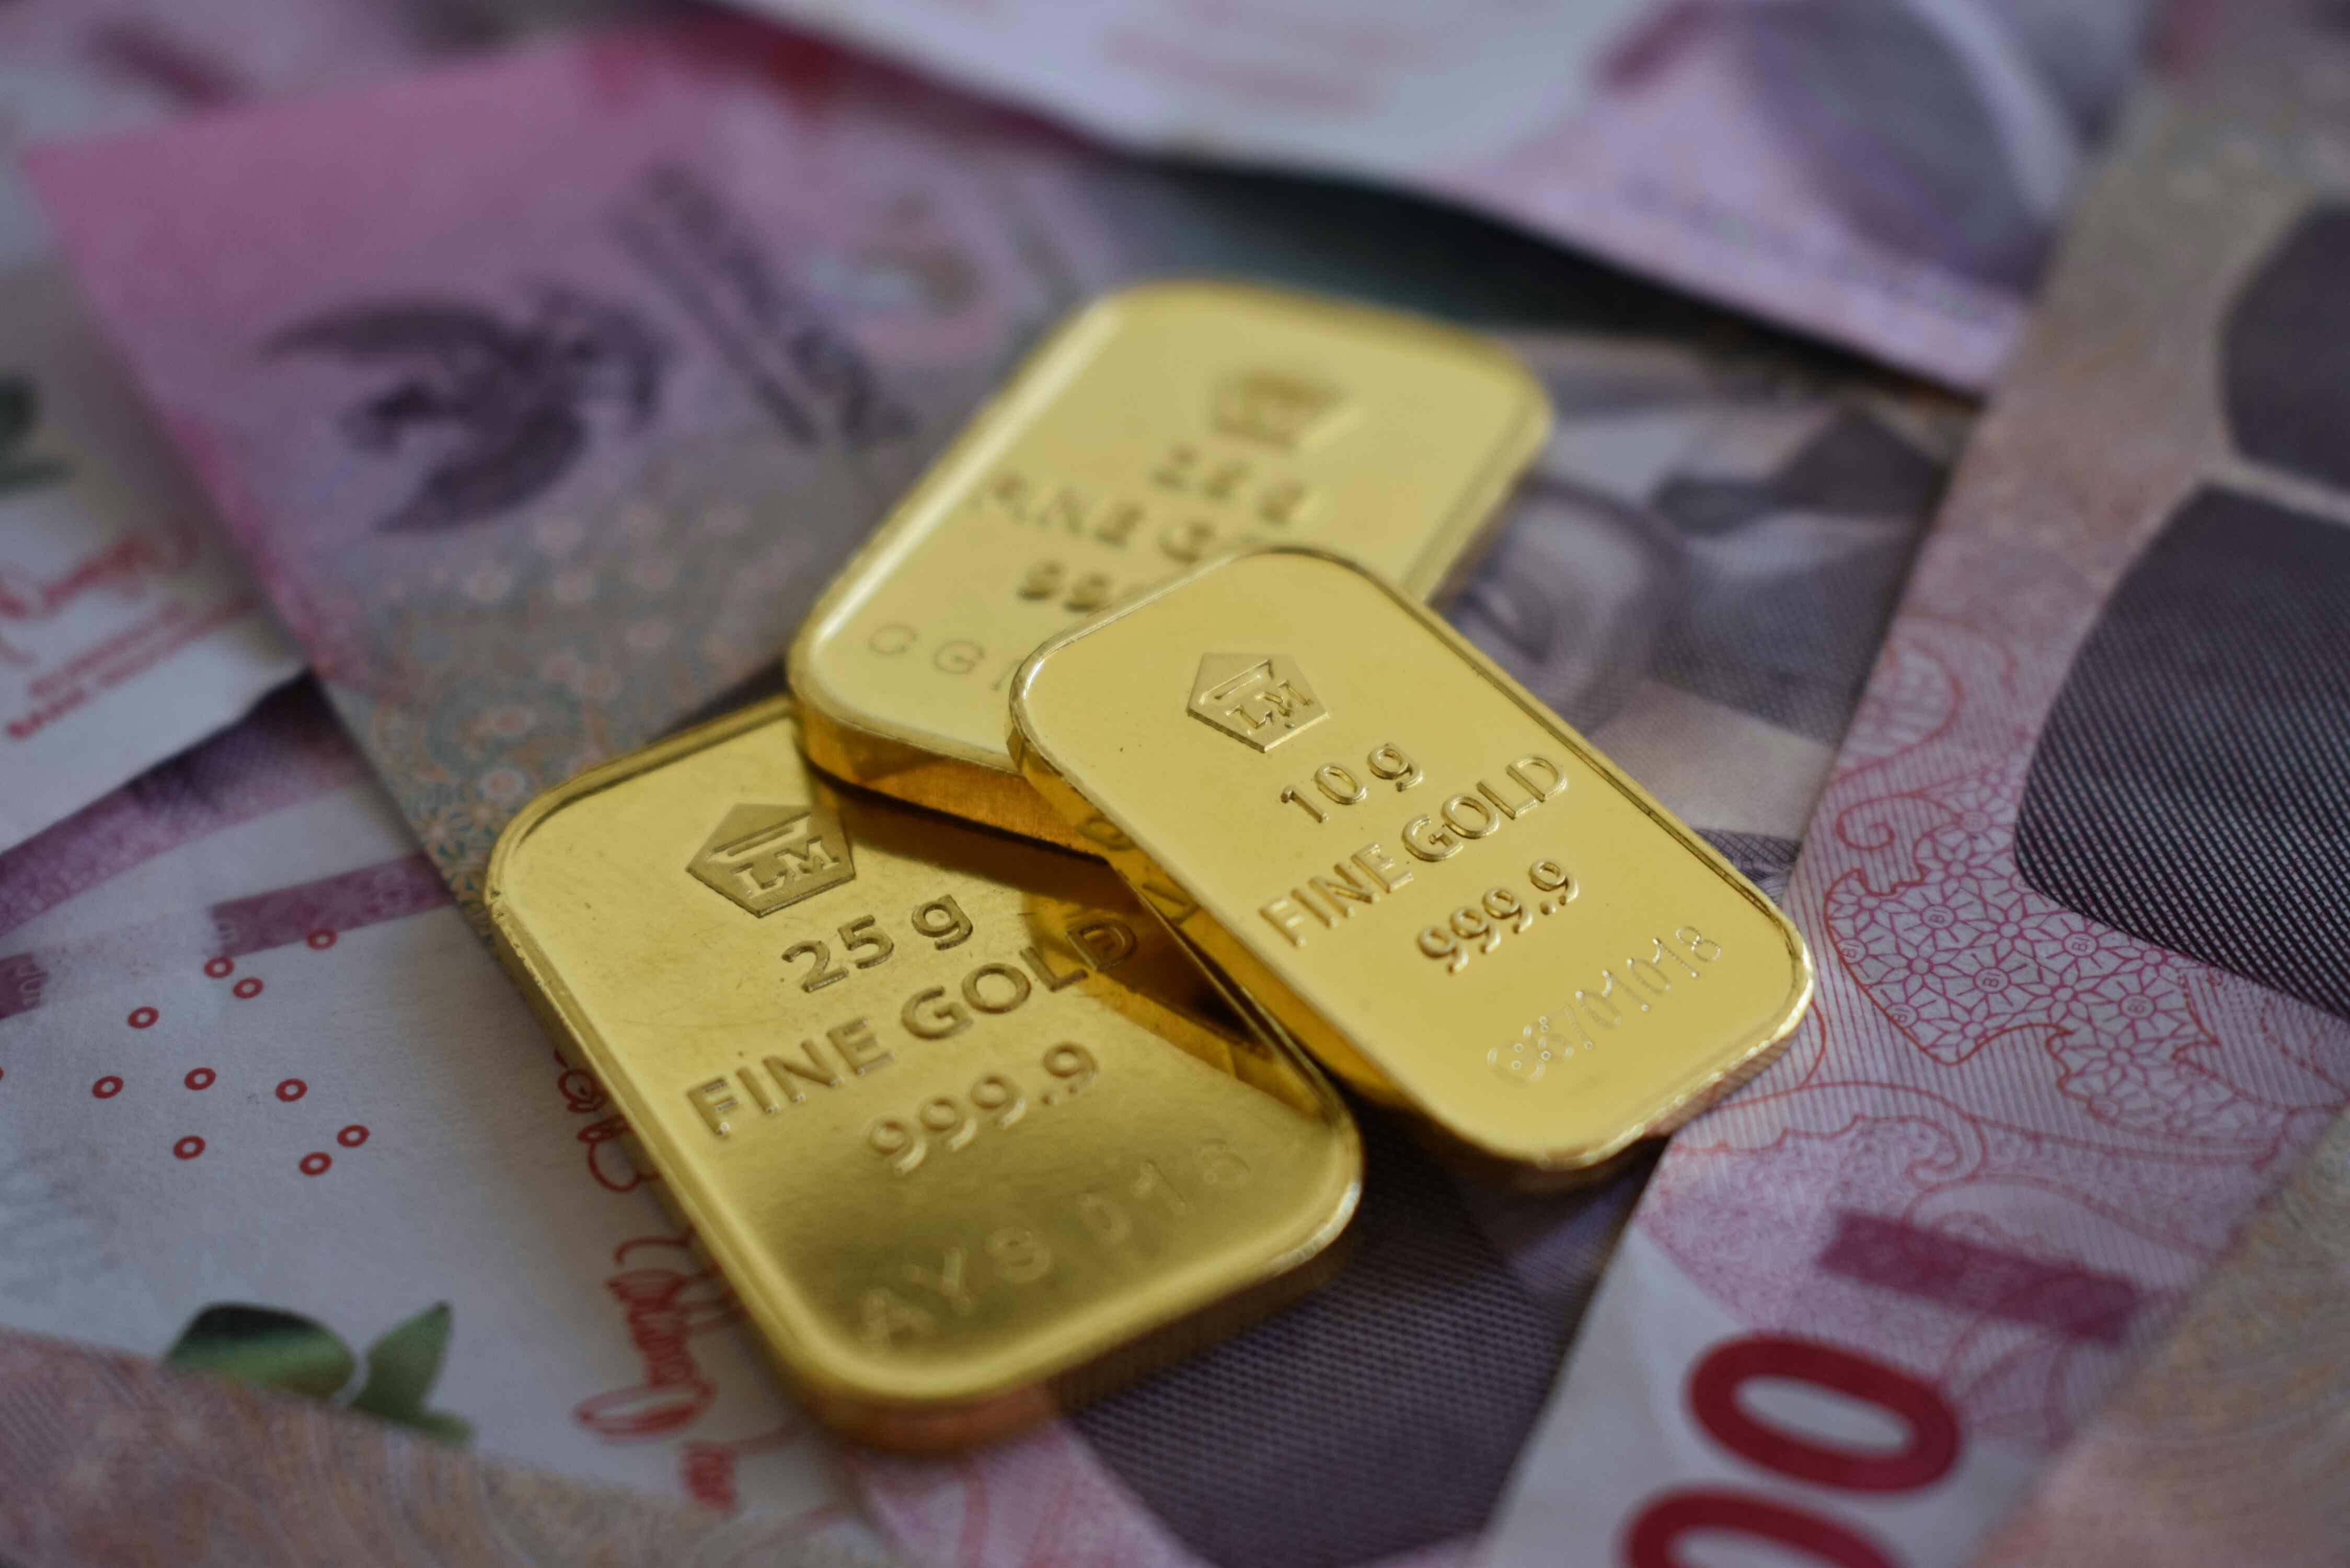 Mulai Investasi Emas dengan Mudah Melalui Tabung Emas Pegadaian